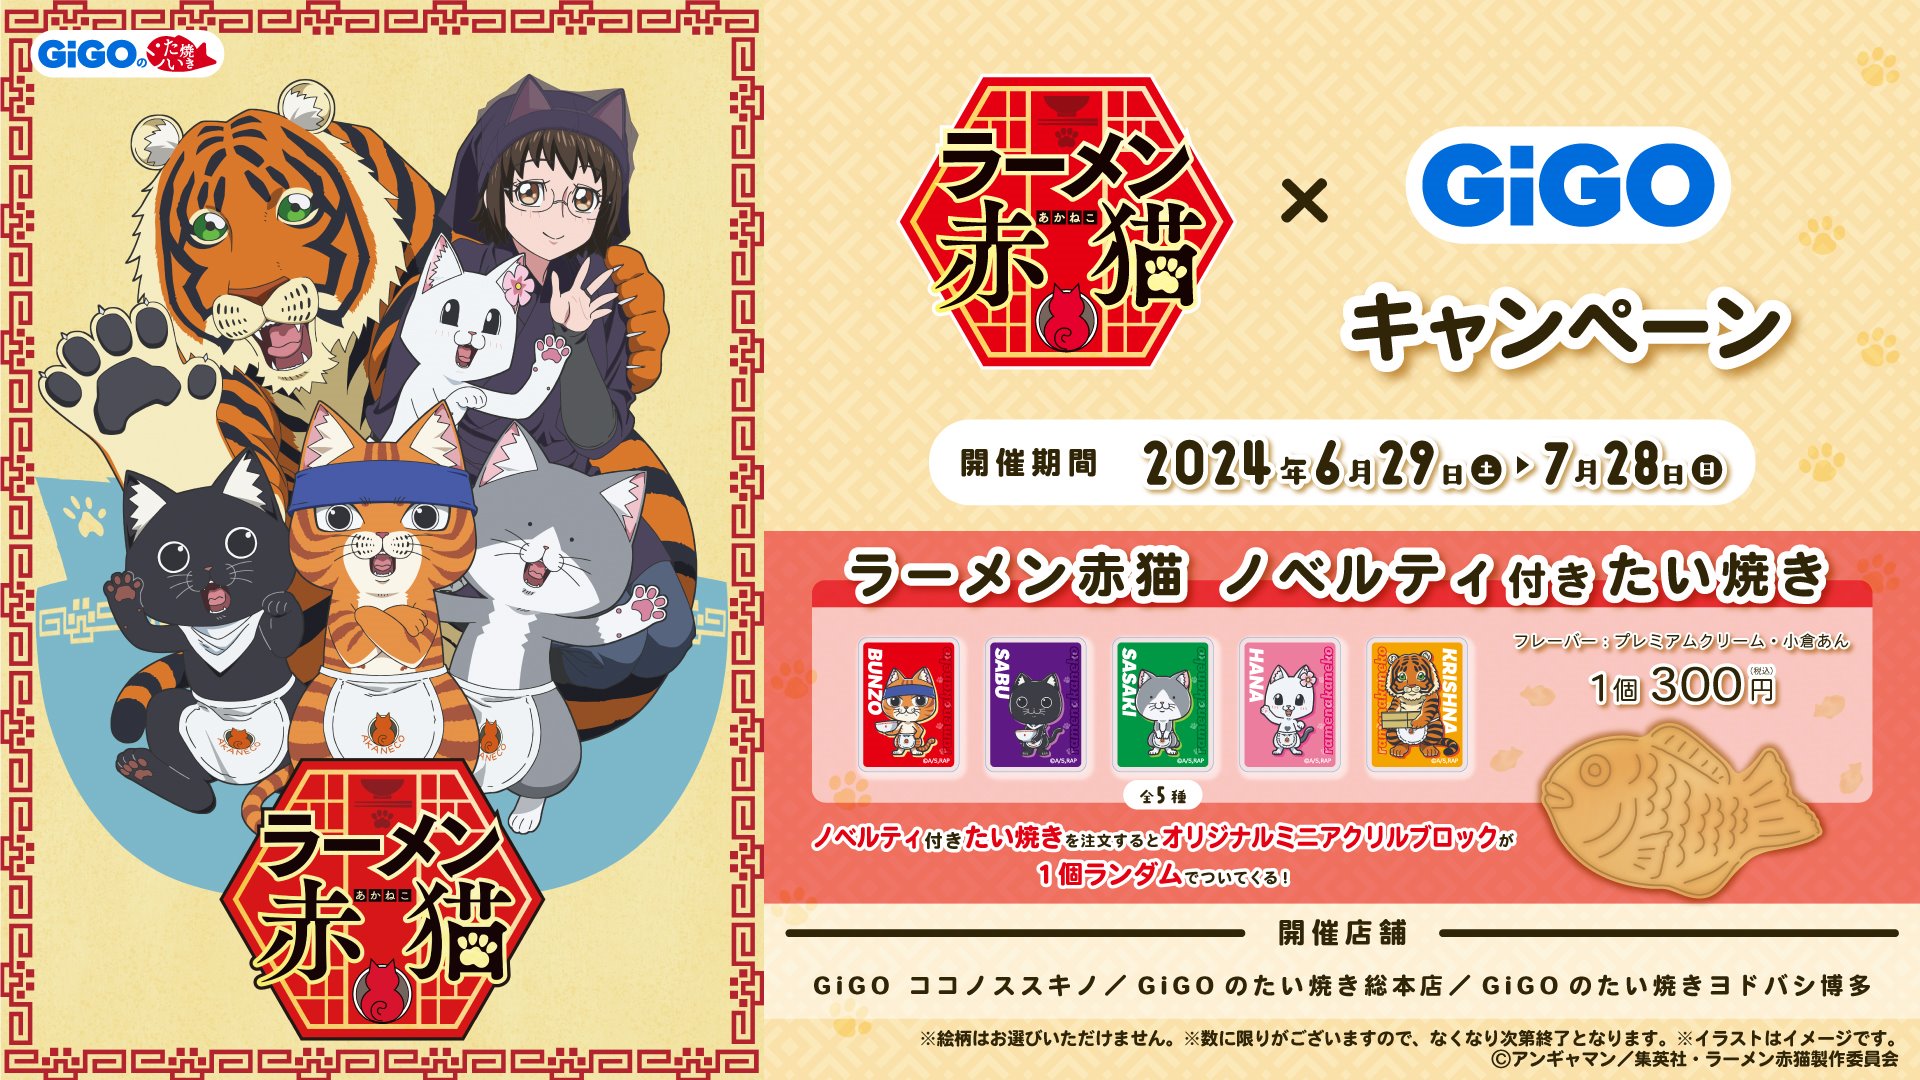 TVアニメ『ラーメン赤猫』×GiGOキャンペーン